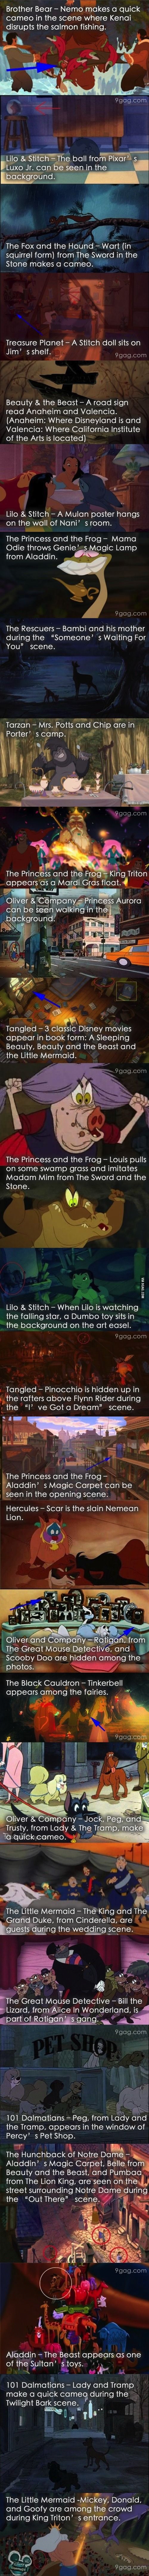 Hidden Gems in Disney Movies